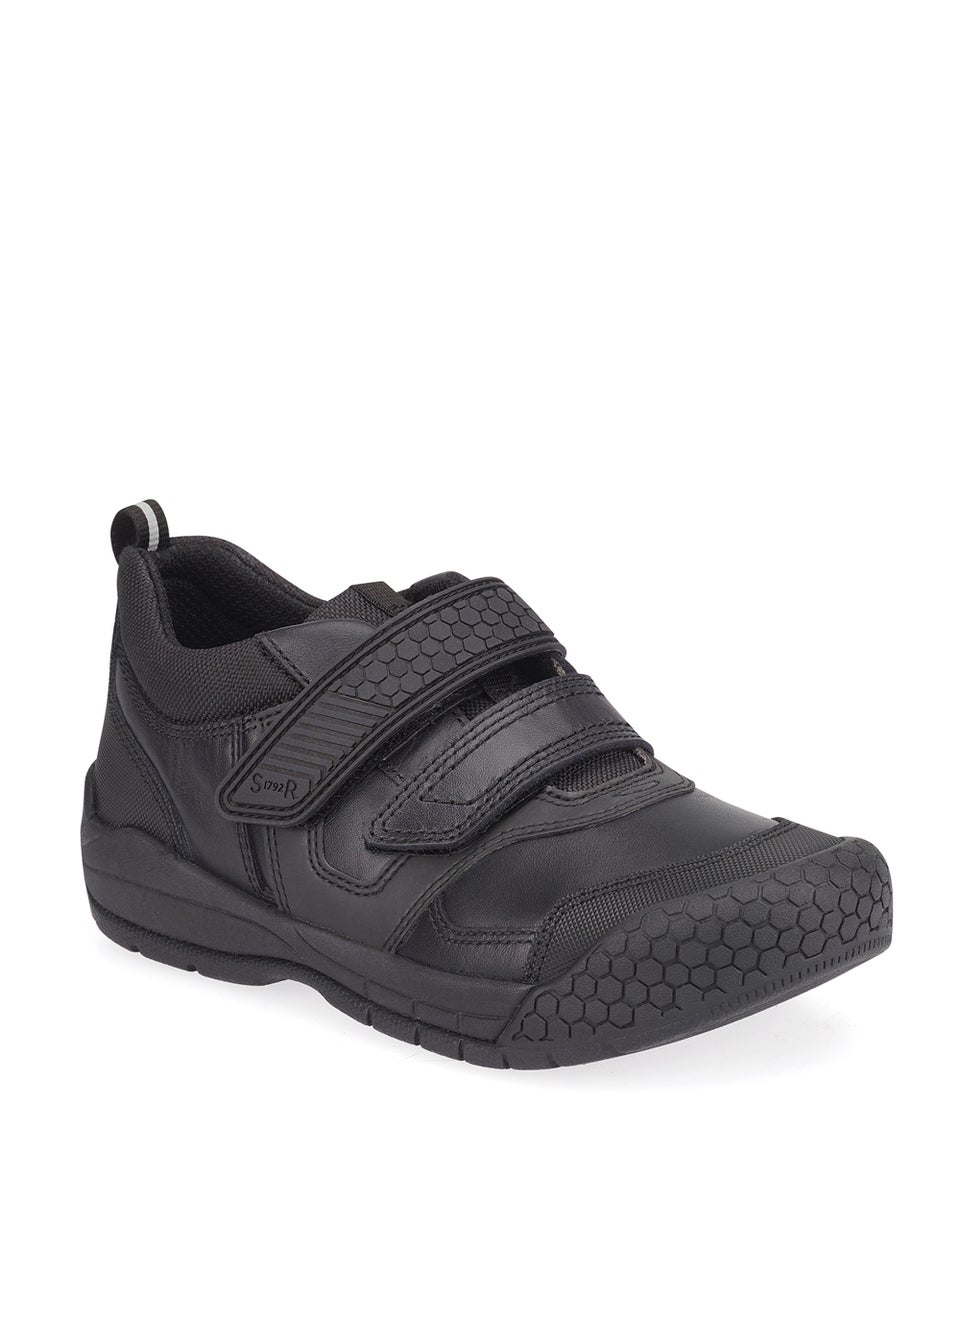 Start-Rite Strike Black School Shoes (Wide Fit G)